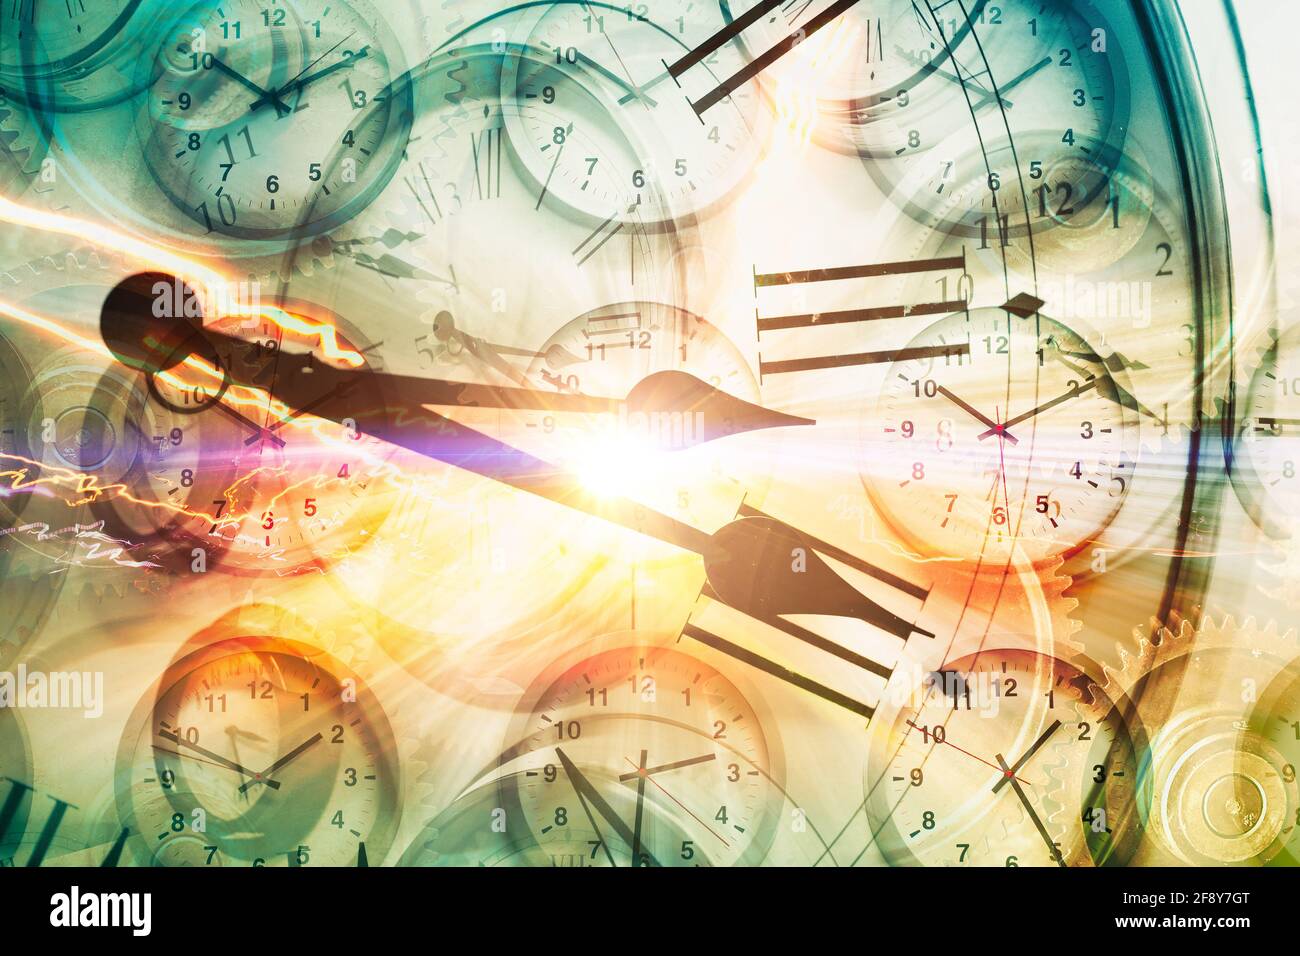 Concept de temps de déplacement ou de machine à temps, les horloges temps se superposent avec la voiture de piste légère de conduite à grande vitesse à l'hyper espace rapide de synchronisation vers l'avant Banque D'Images